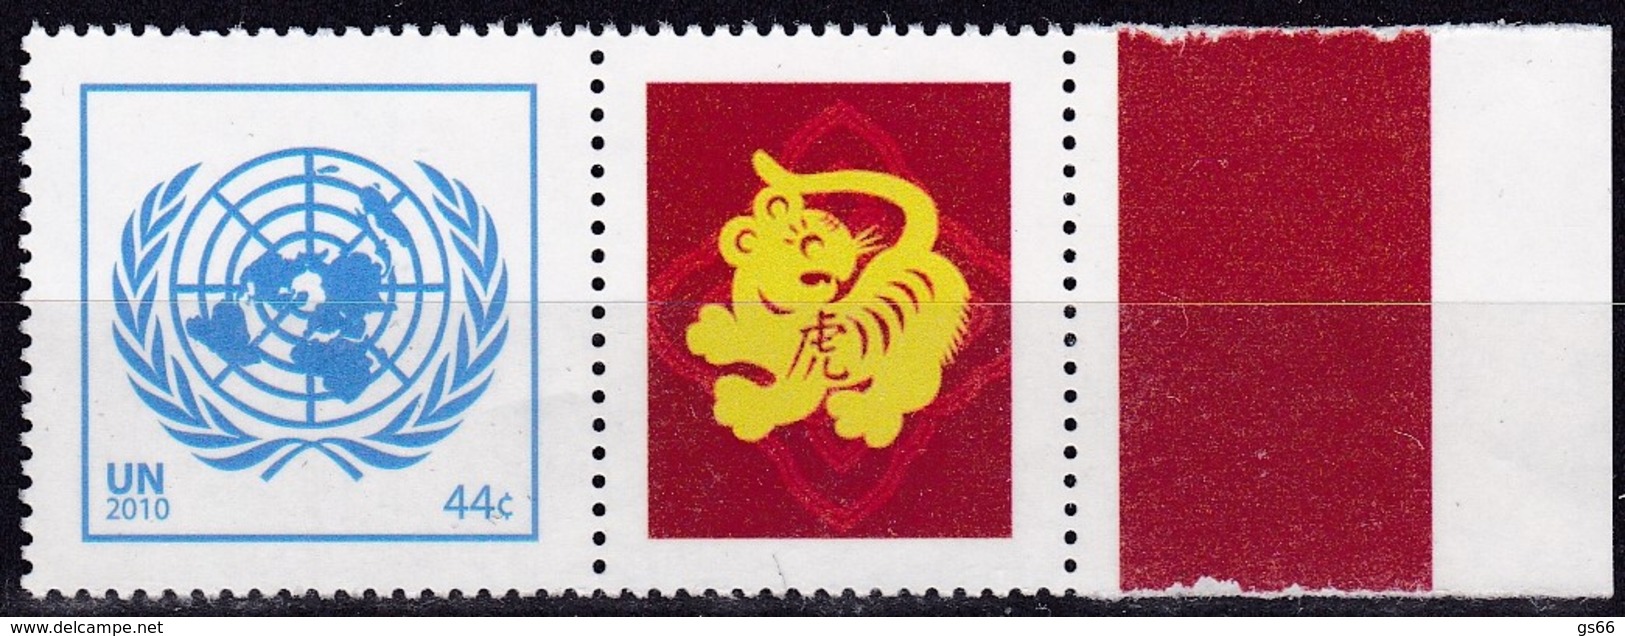 UNO-New York, 2010, 1228,  MNH **, Grußmarke: Chinesische Tierkreiszeichen - Jahr Des Tigers. - Ungebraucht